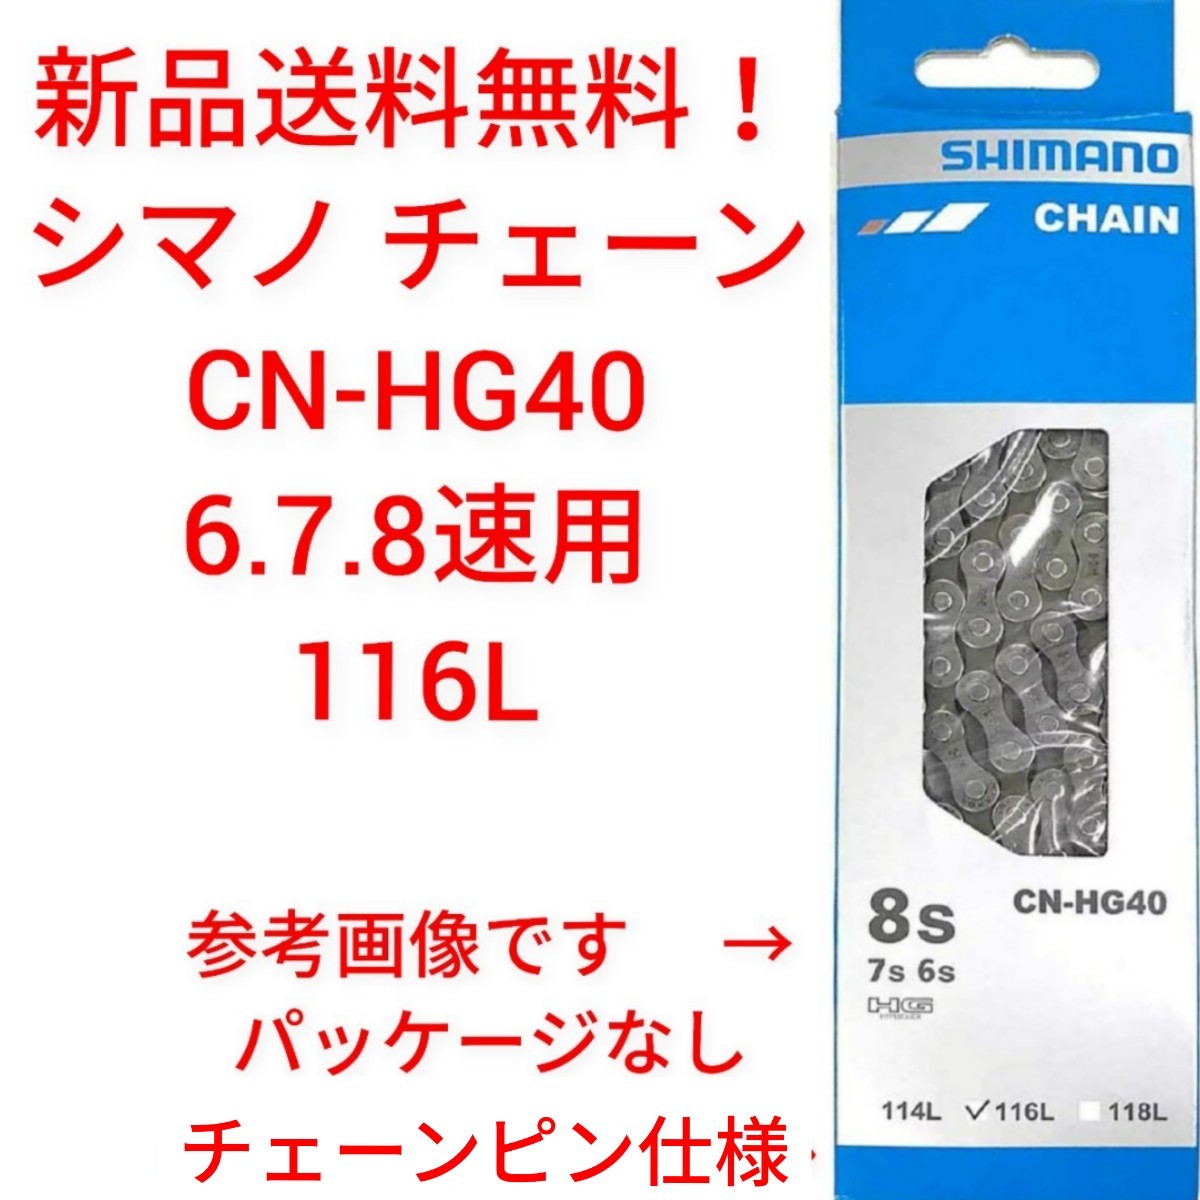 【新品送料無料】 チェーン CN-HG40 6/7/8S用 116L SHIMANO シマノ 外装 ギア 自転車 6段 7段 8段 変速 【関連】 CN-HG71_画像1